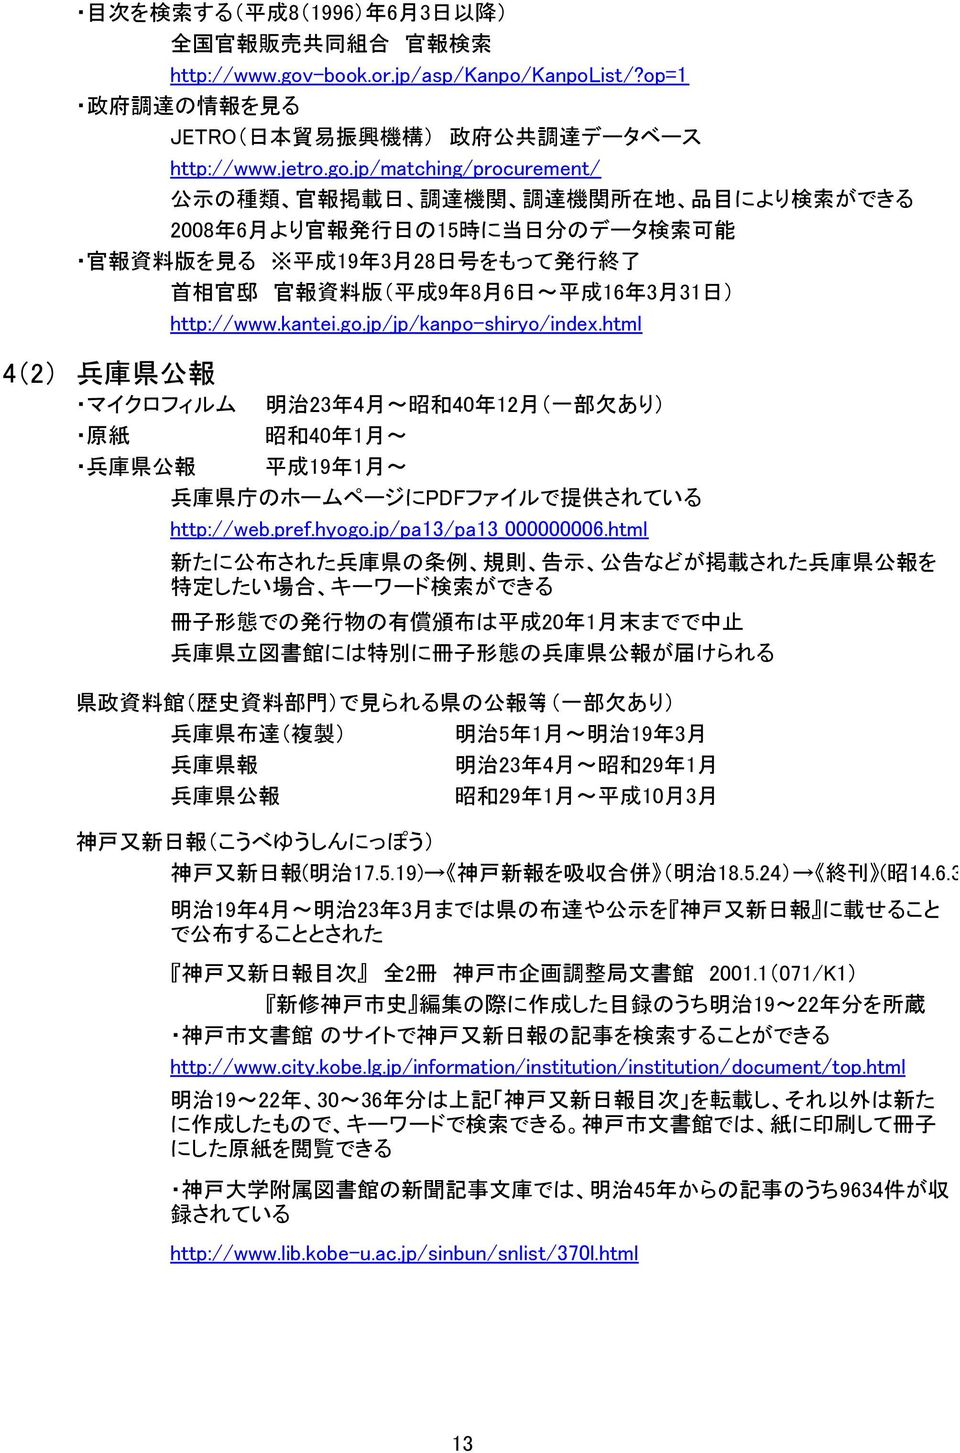 jp/matching/procurement/ 公 示 の 種 類 官 報 掲 載 日 調 達 機 関 調 達 機 関 所 在 地 品 目 により 検 索 ができる 2008 年 6 月 より 官 報 発 行 日 の15 時 に 当 日 分 のデータ 検 索 可 能 官 報 資 料 版 を 見 る 平 成 19 年 3 月 28 日 号 をもって 発 行 終 了 首 相 官 邸 官 報 資 料